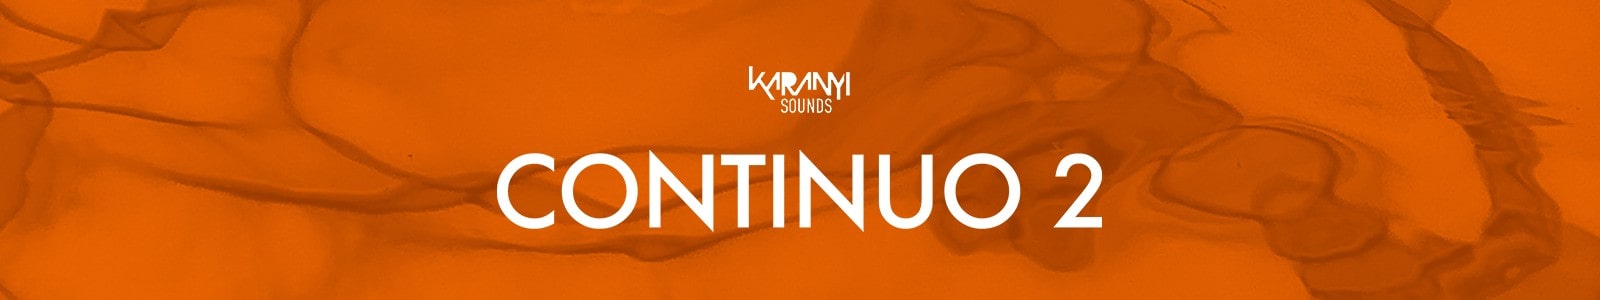 Karanyi Sounds Continuo 2